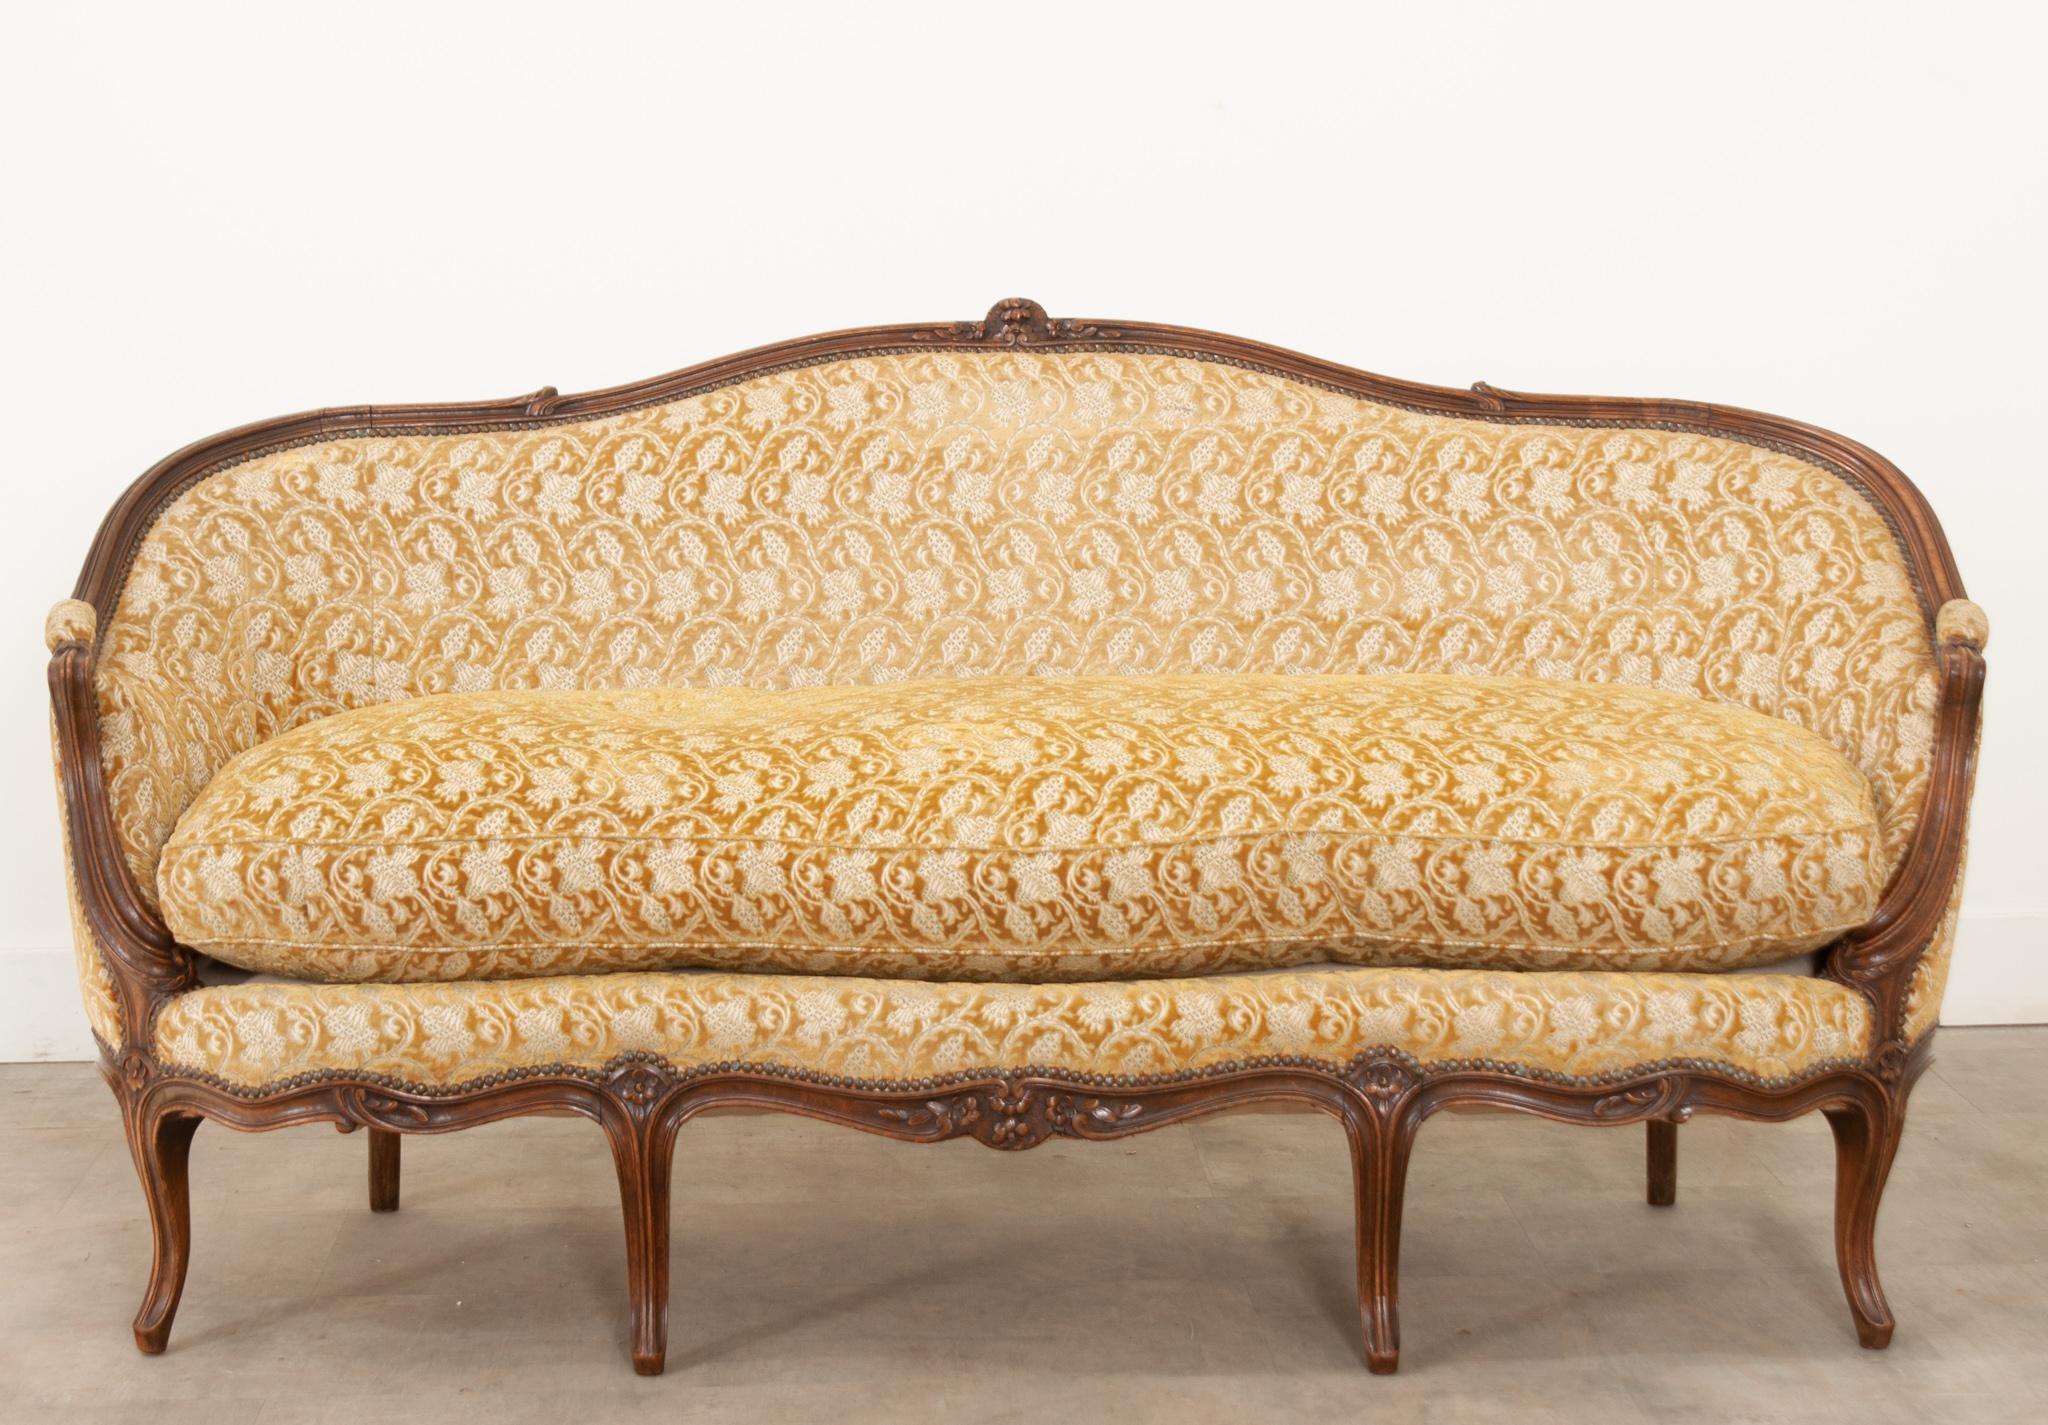 Dieses elegante und bequeme Sofa wurde im 19. Jahrhundert in Frankreich gefertigt und ist mit einem wunderschönen botanischen Druck und goldroter Farbe gepolstert.  Der Rahmen aus geschnitztem Nussbaumholz ist reich an Farbtönen und hat tiefe